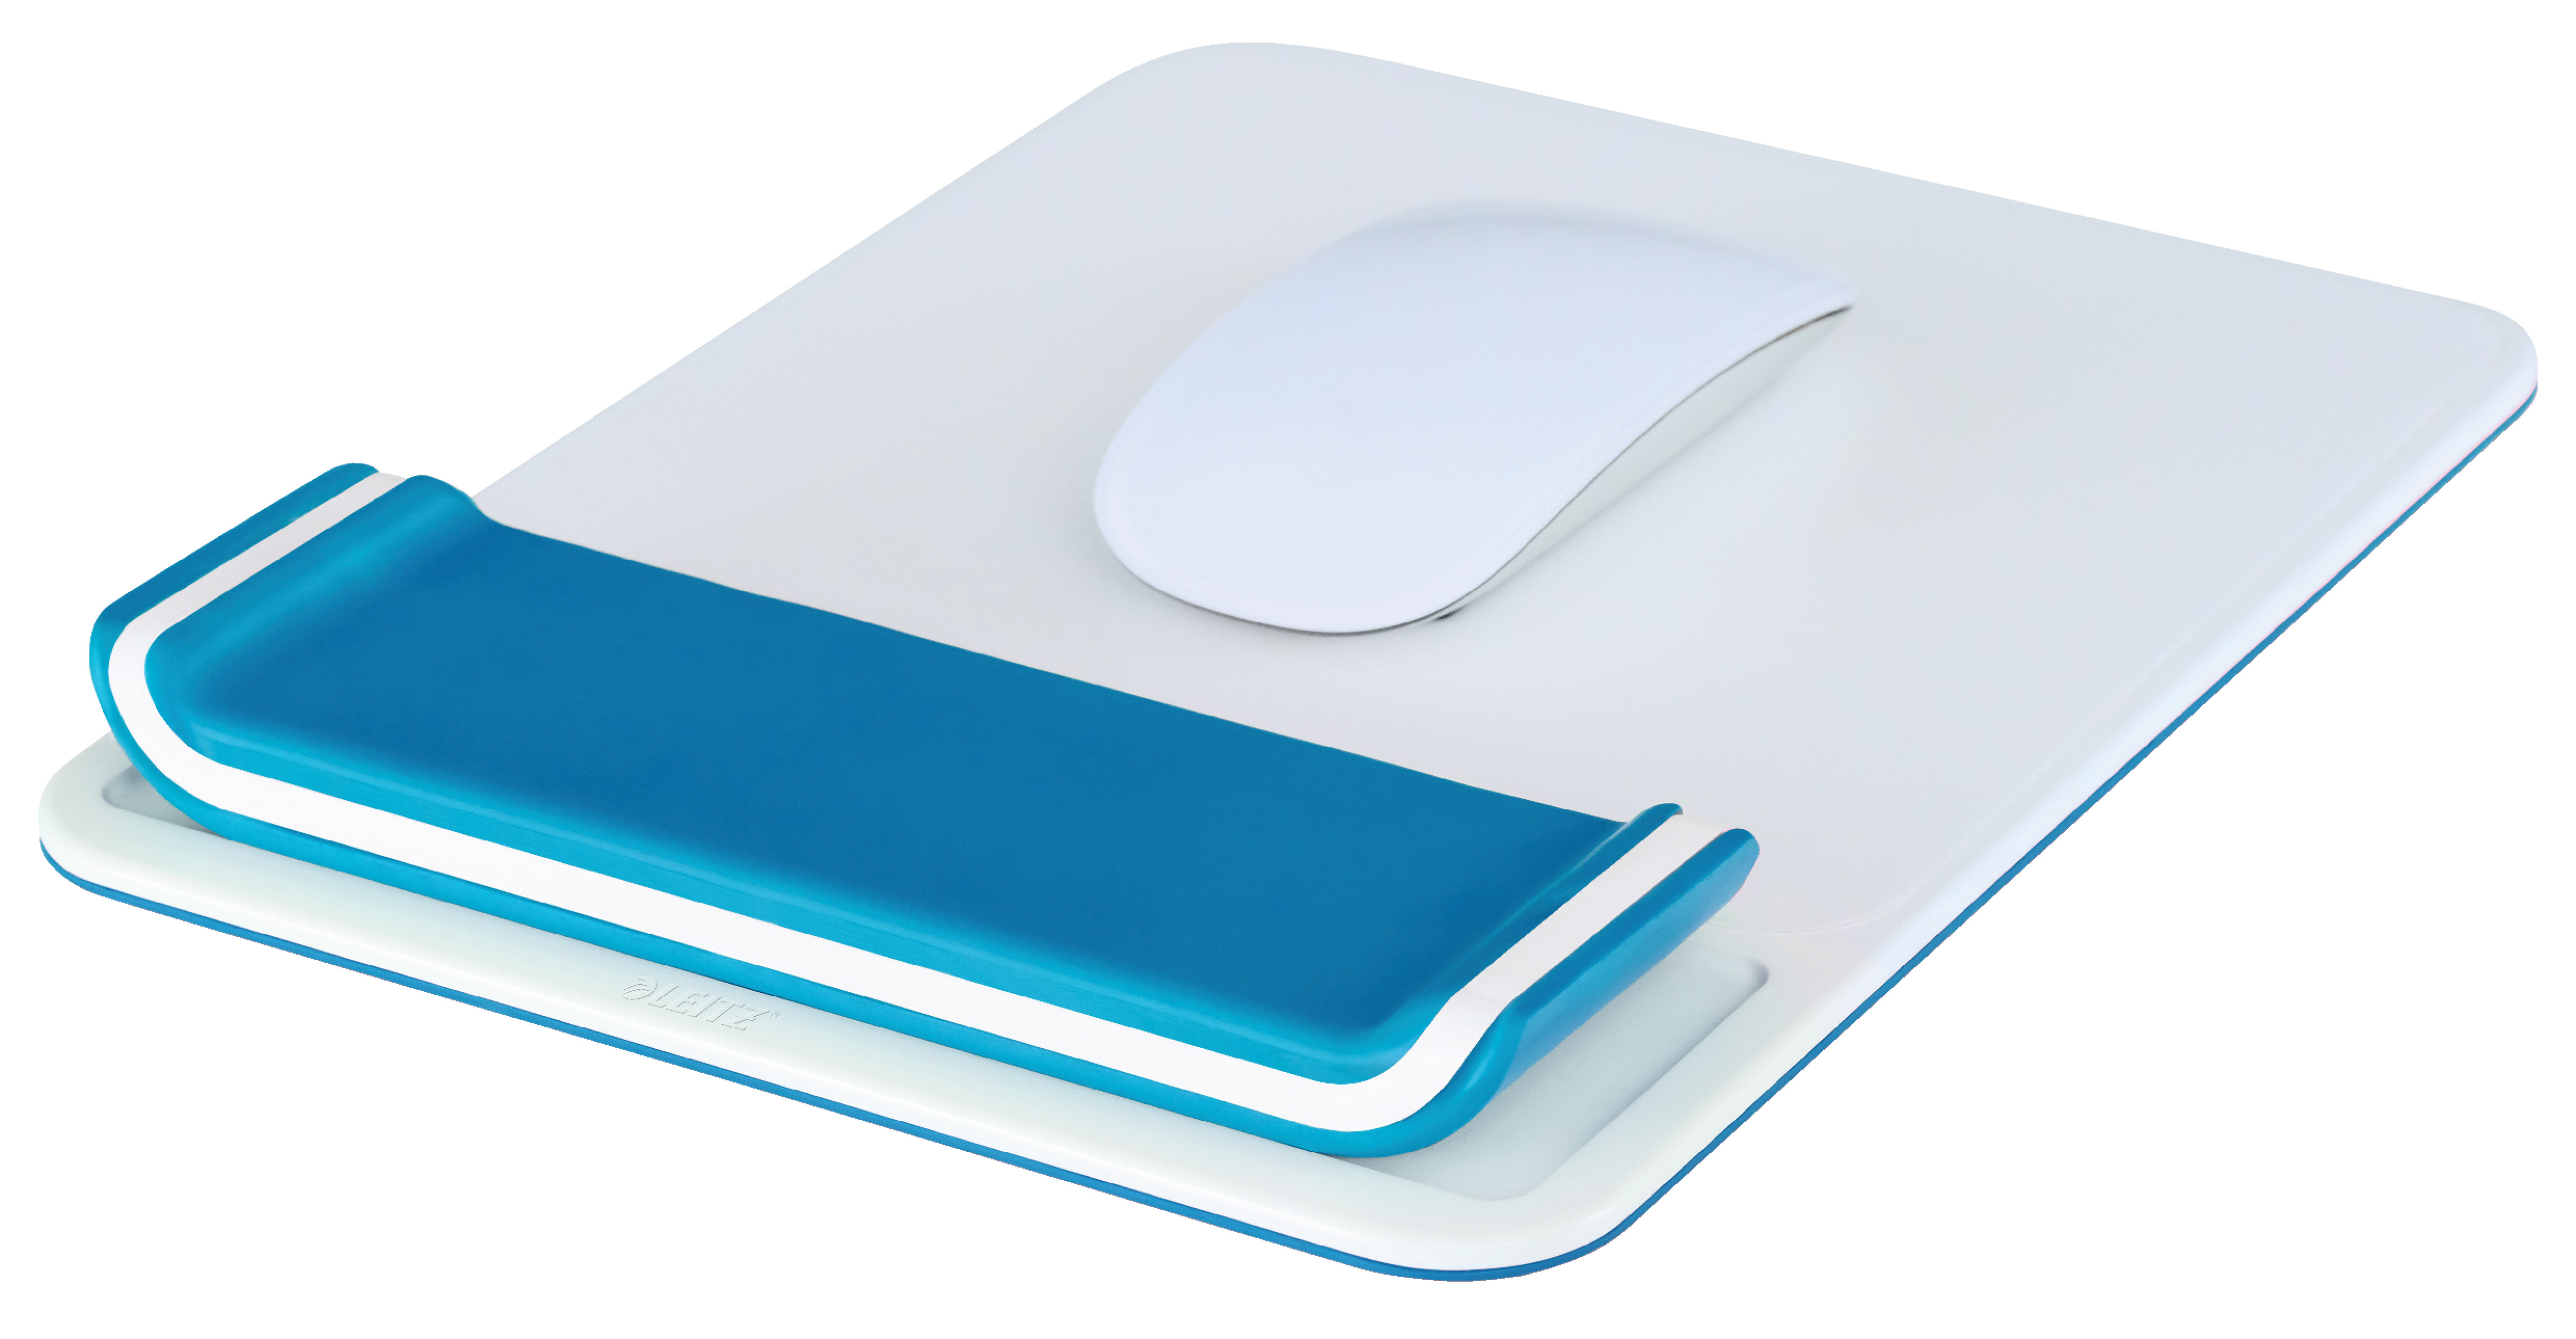 Tapis a souris repose-poignet bleu - Accessoires d'ordinateur